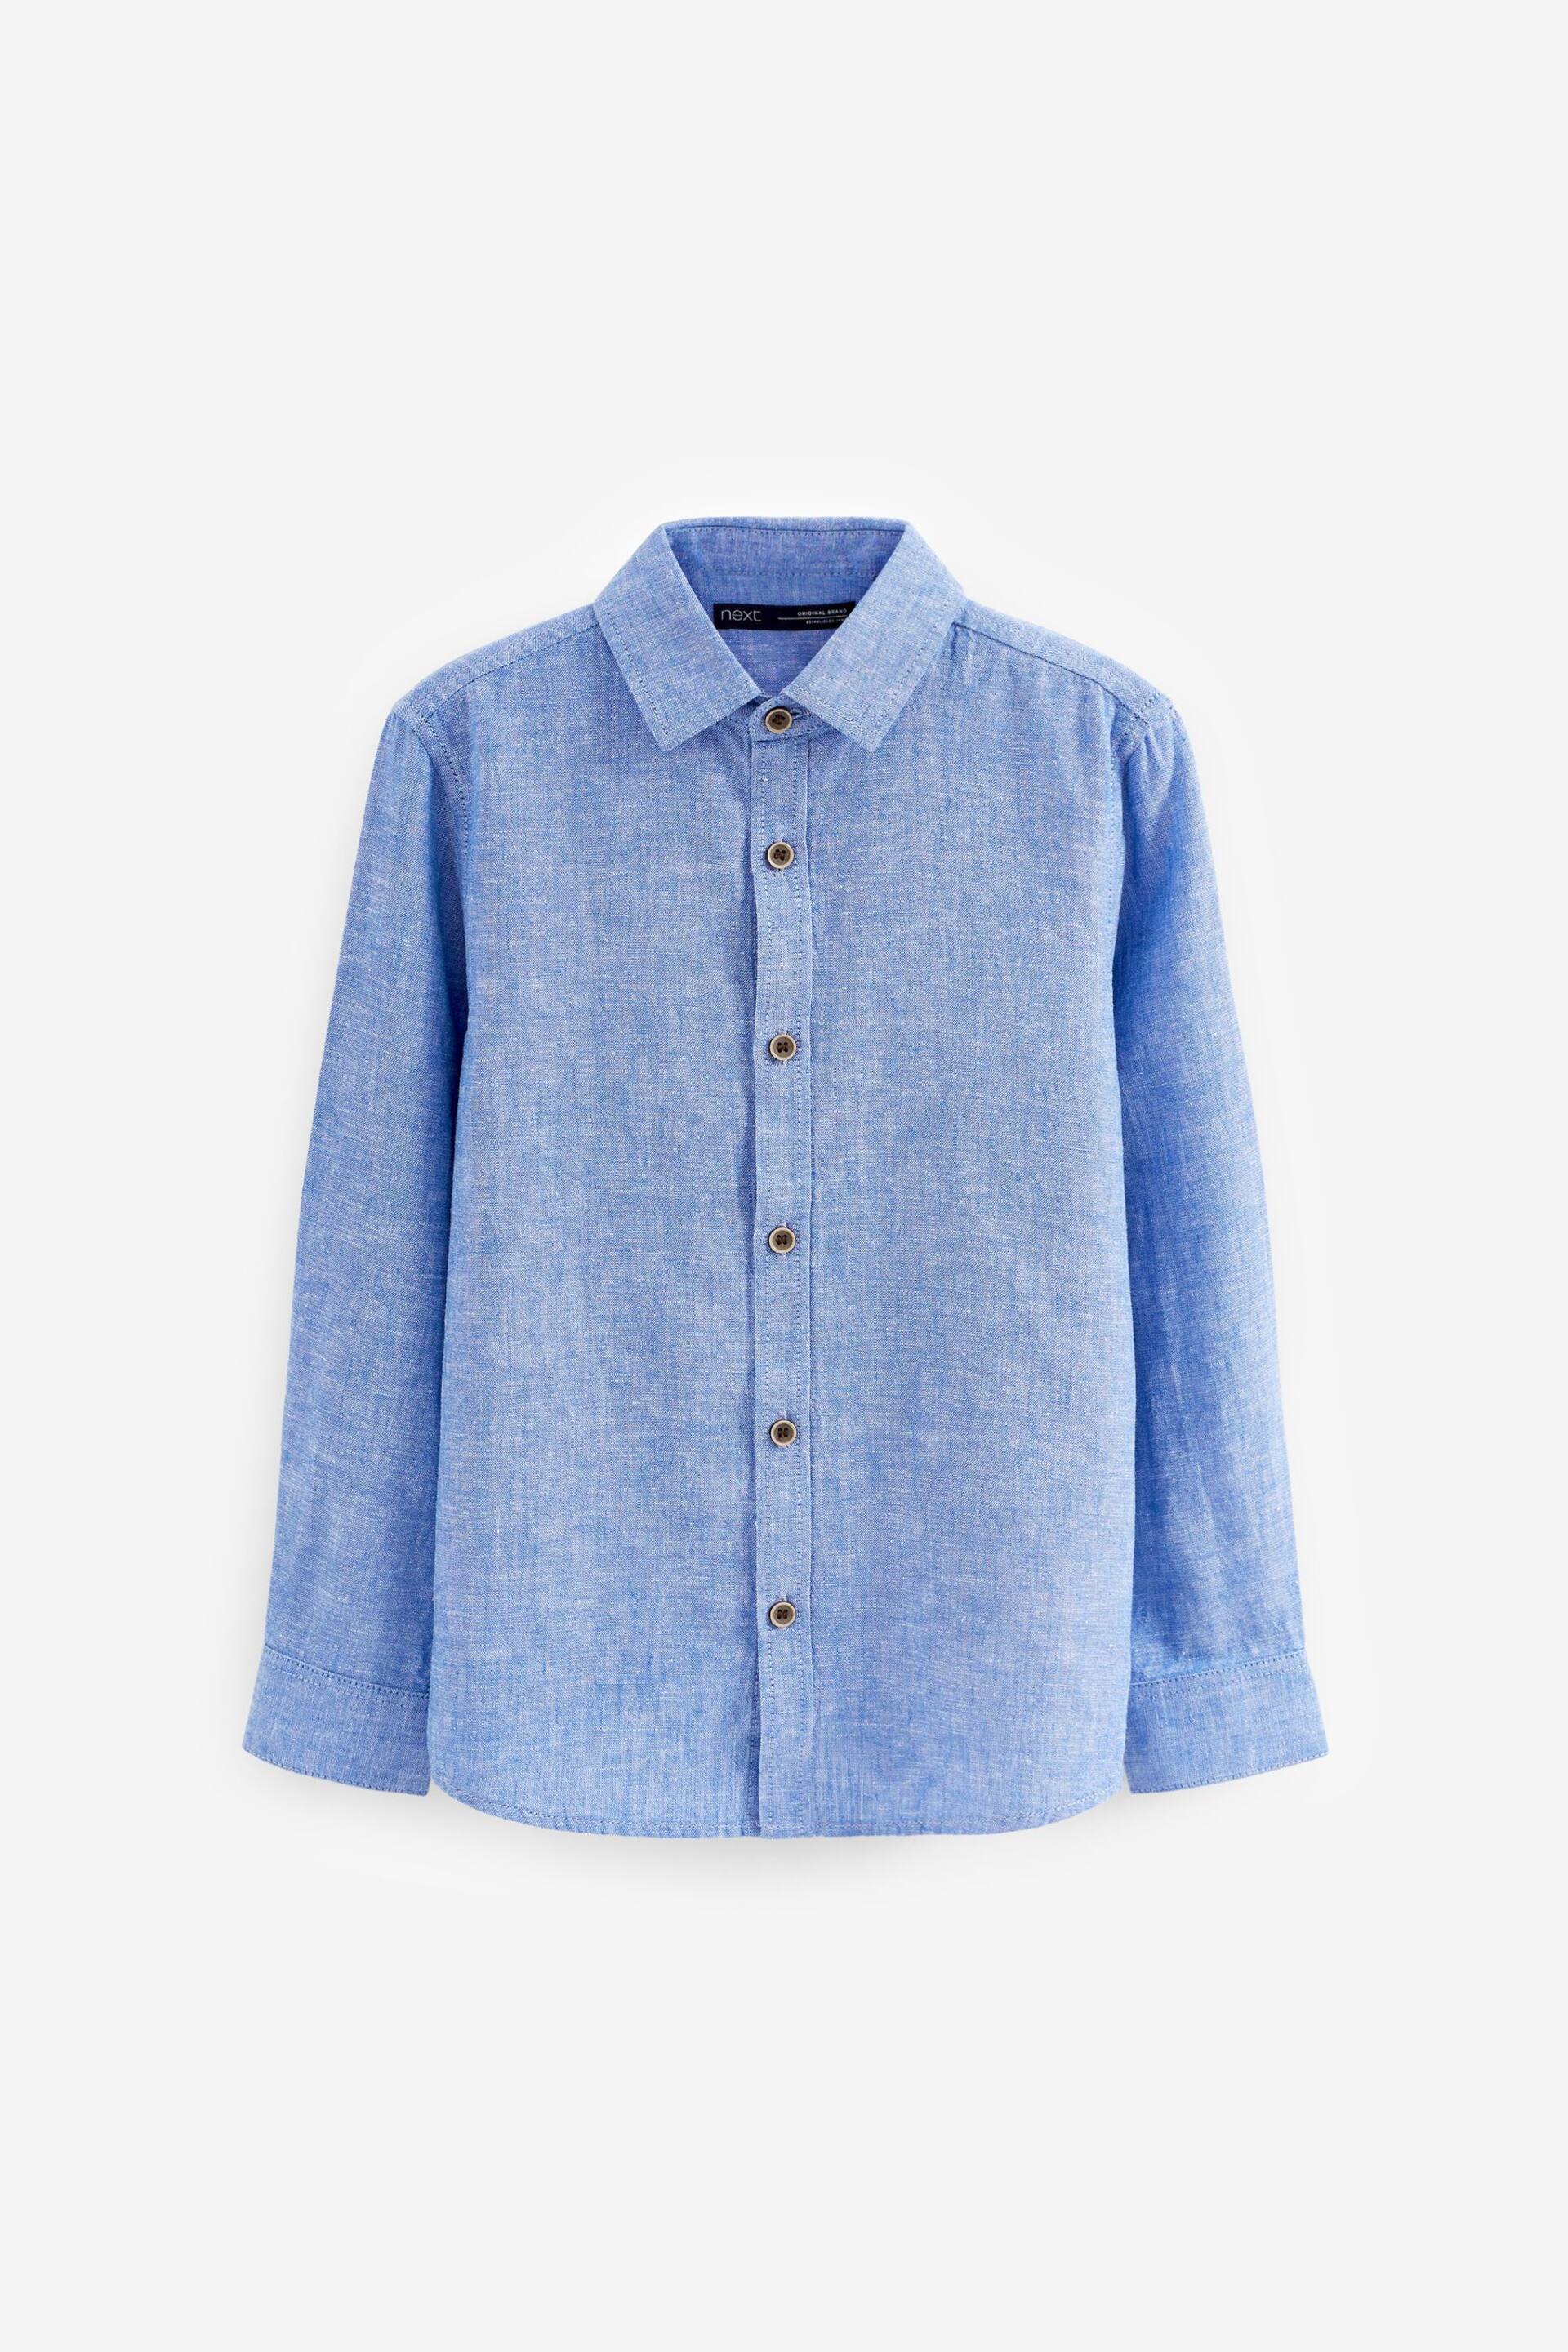 Blue Long Sleeve Linen Blend Shirt (3-16yrs) - Image 1 of 2